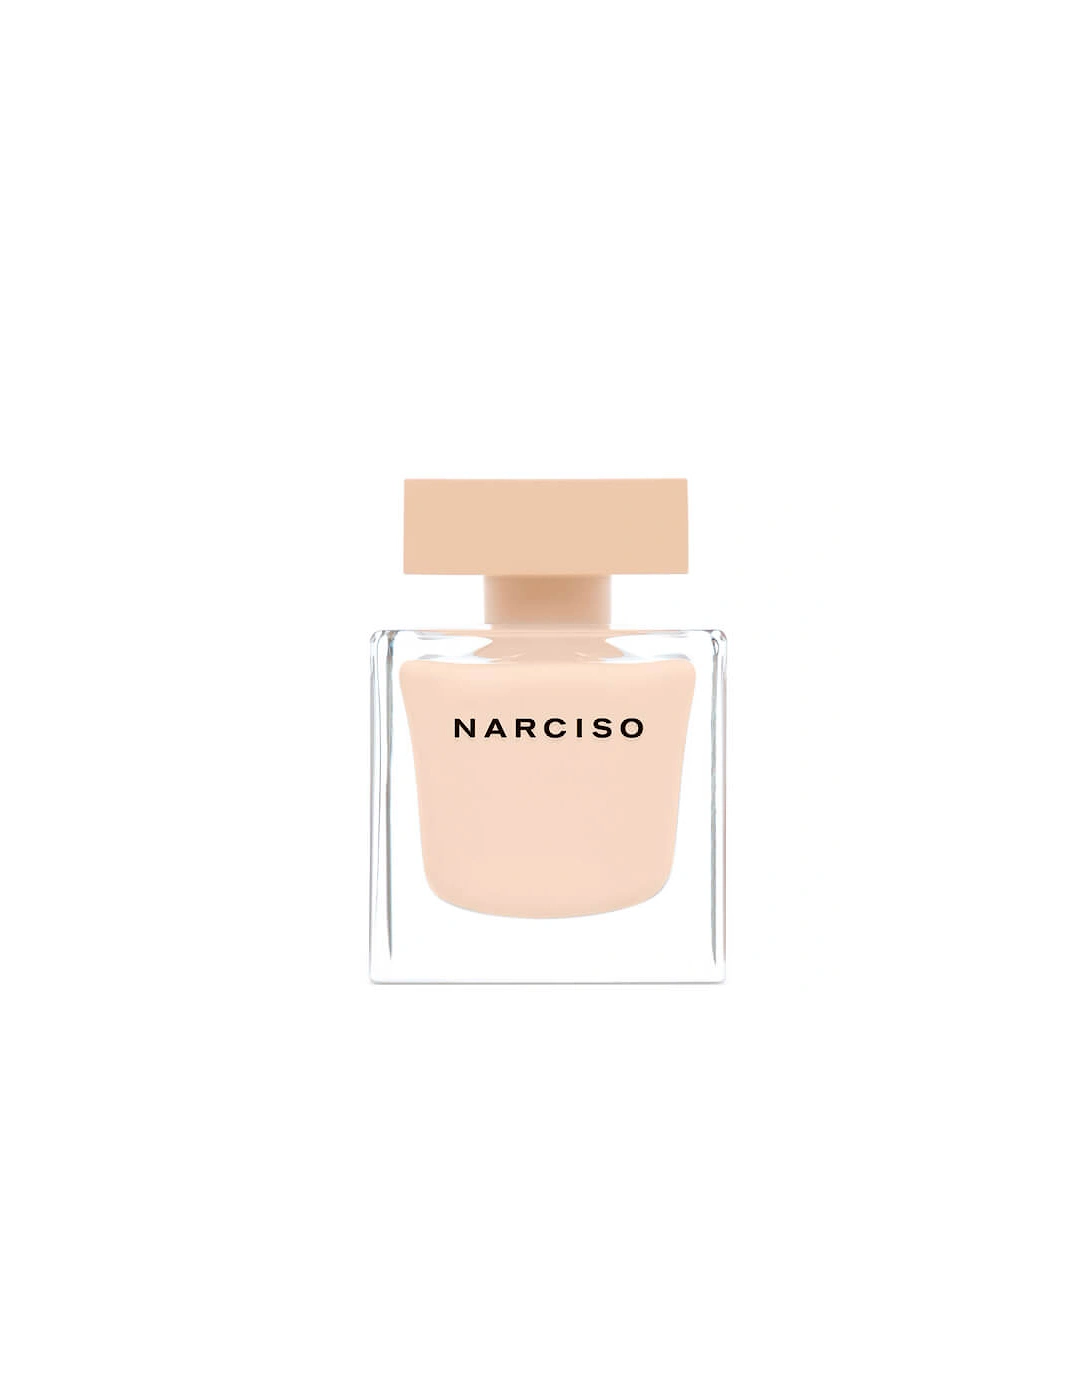 Narciso Poudrée Eau de Parfum - 90ml, 2 of 1